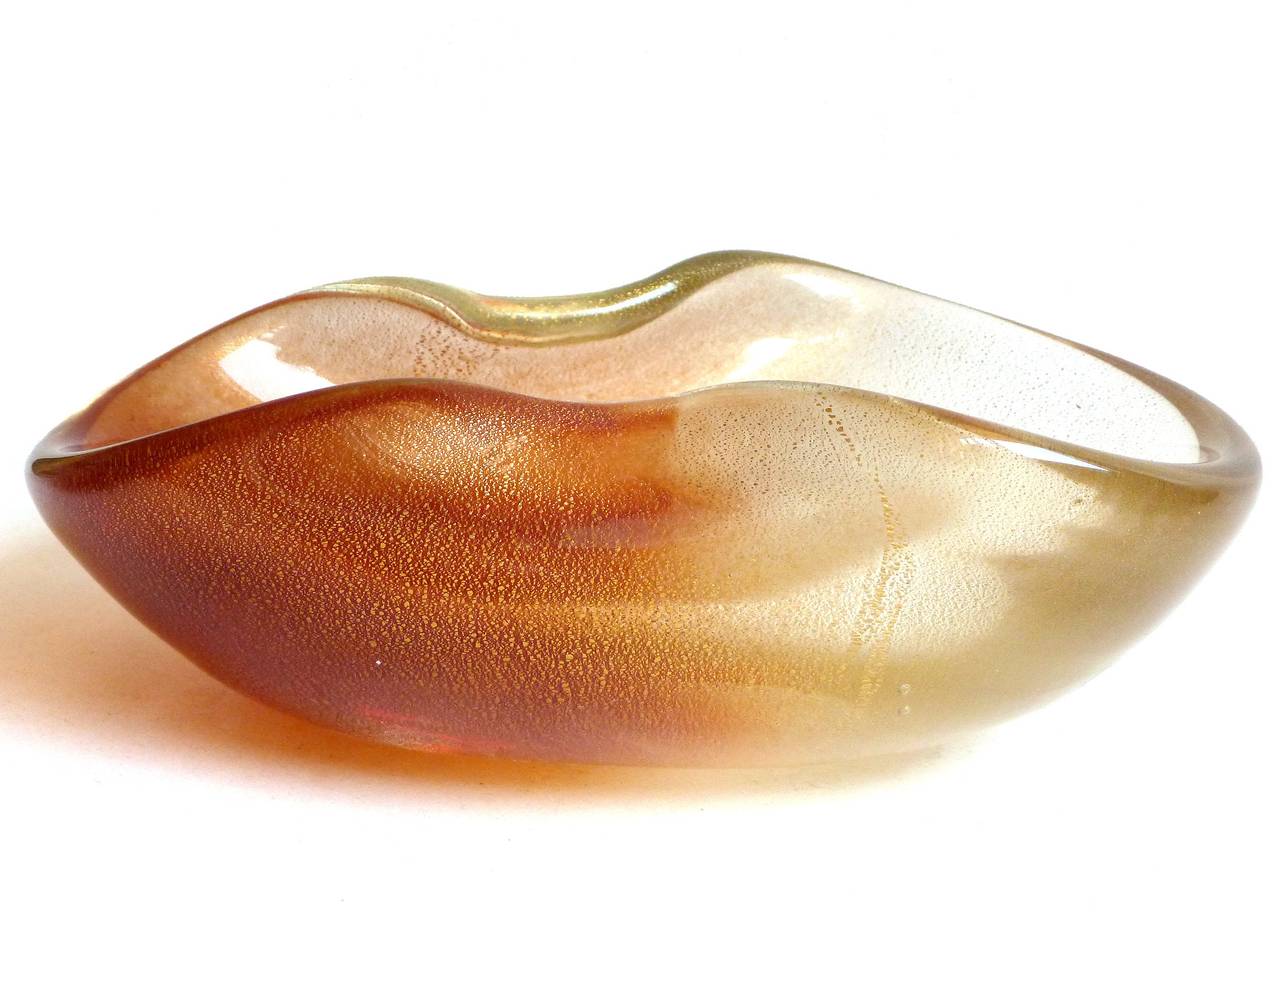 NUR noch 1 übrig! Schöne Vintage Murano mundgeblasen rostrot und Goldflecken italienische Kunst Glasschale. Dokumentiert für den Designer Archimede Seguso, ca. 1950er Jahre. Hergestellt mit Pulverpigmenten in der 